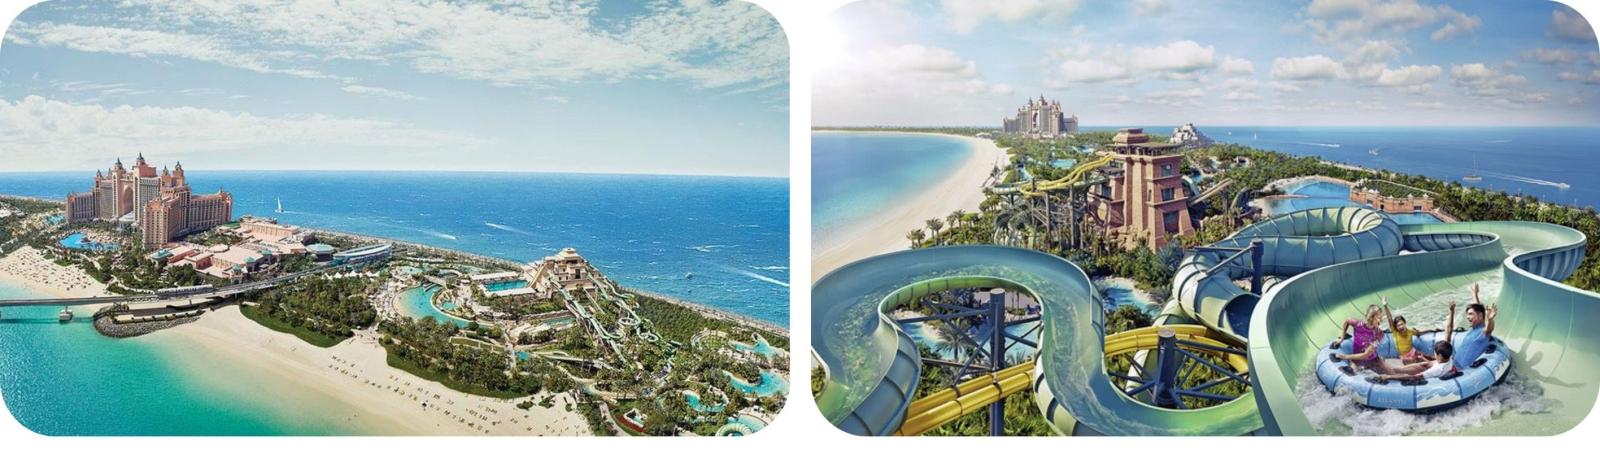 Atlantis The Palm activiteiten en tours in Dubai | musement